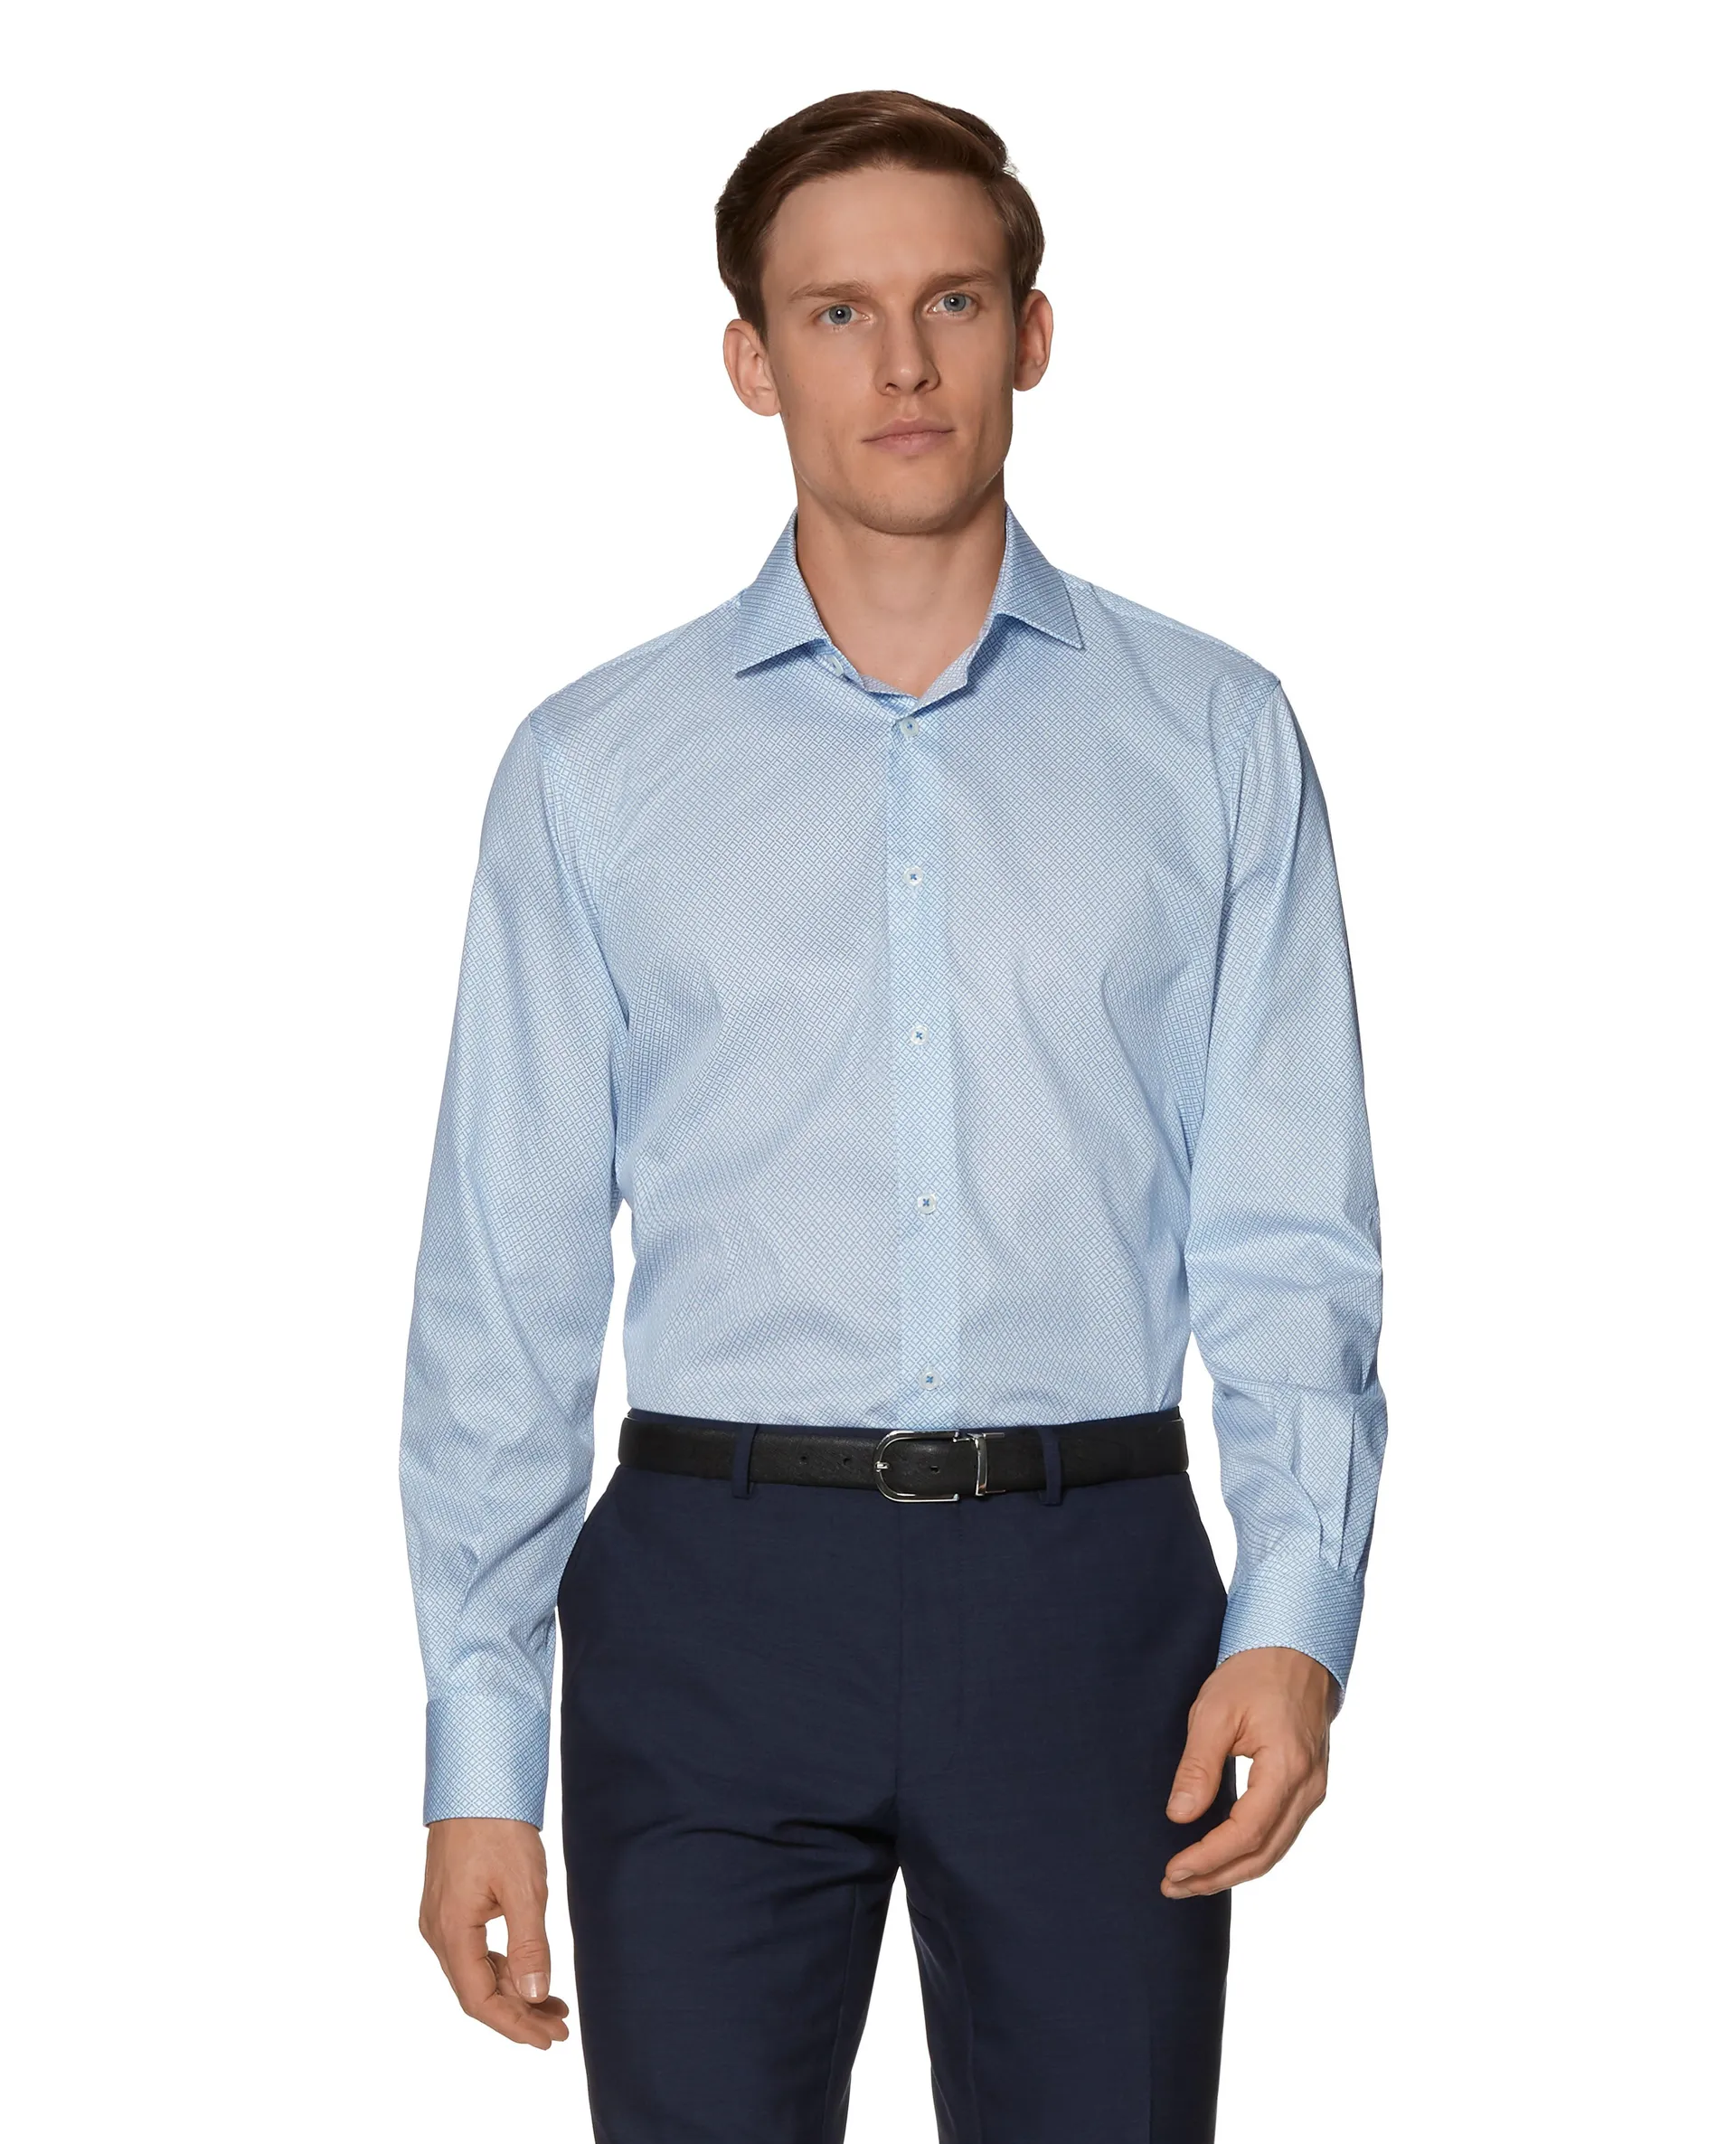 Gyroscopic Print Slim Fit Blue Single Cuff Shirt